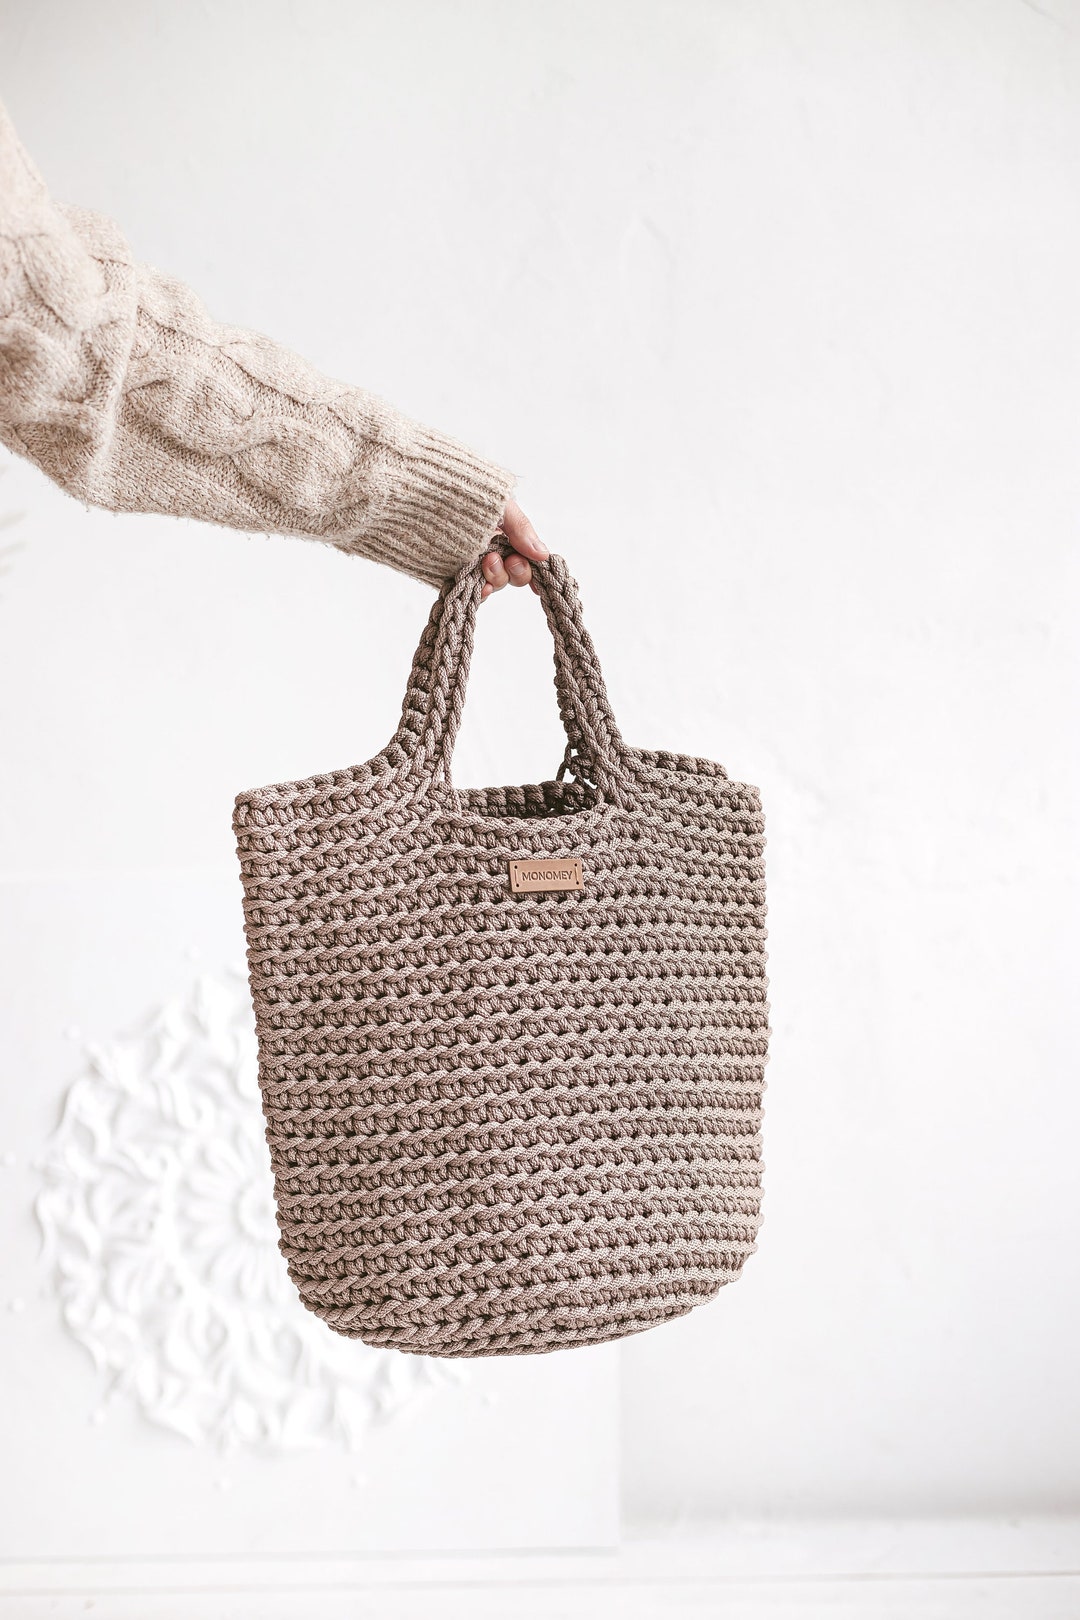 Crochet Tote Bag Pattern Crochet Tote Pattern Handbag - Etsy